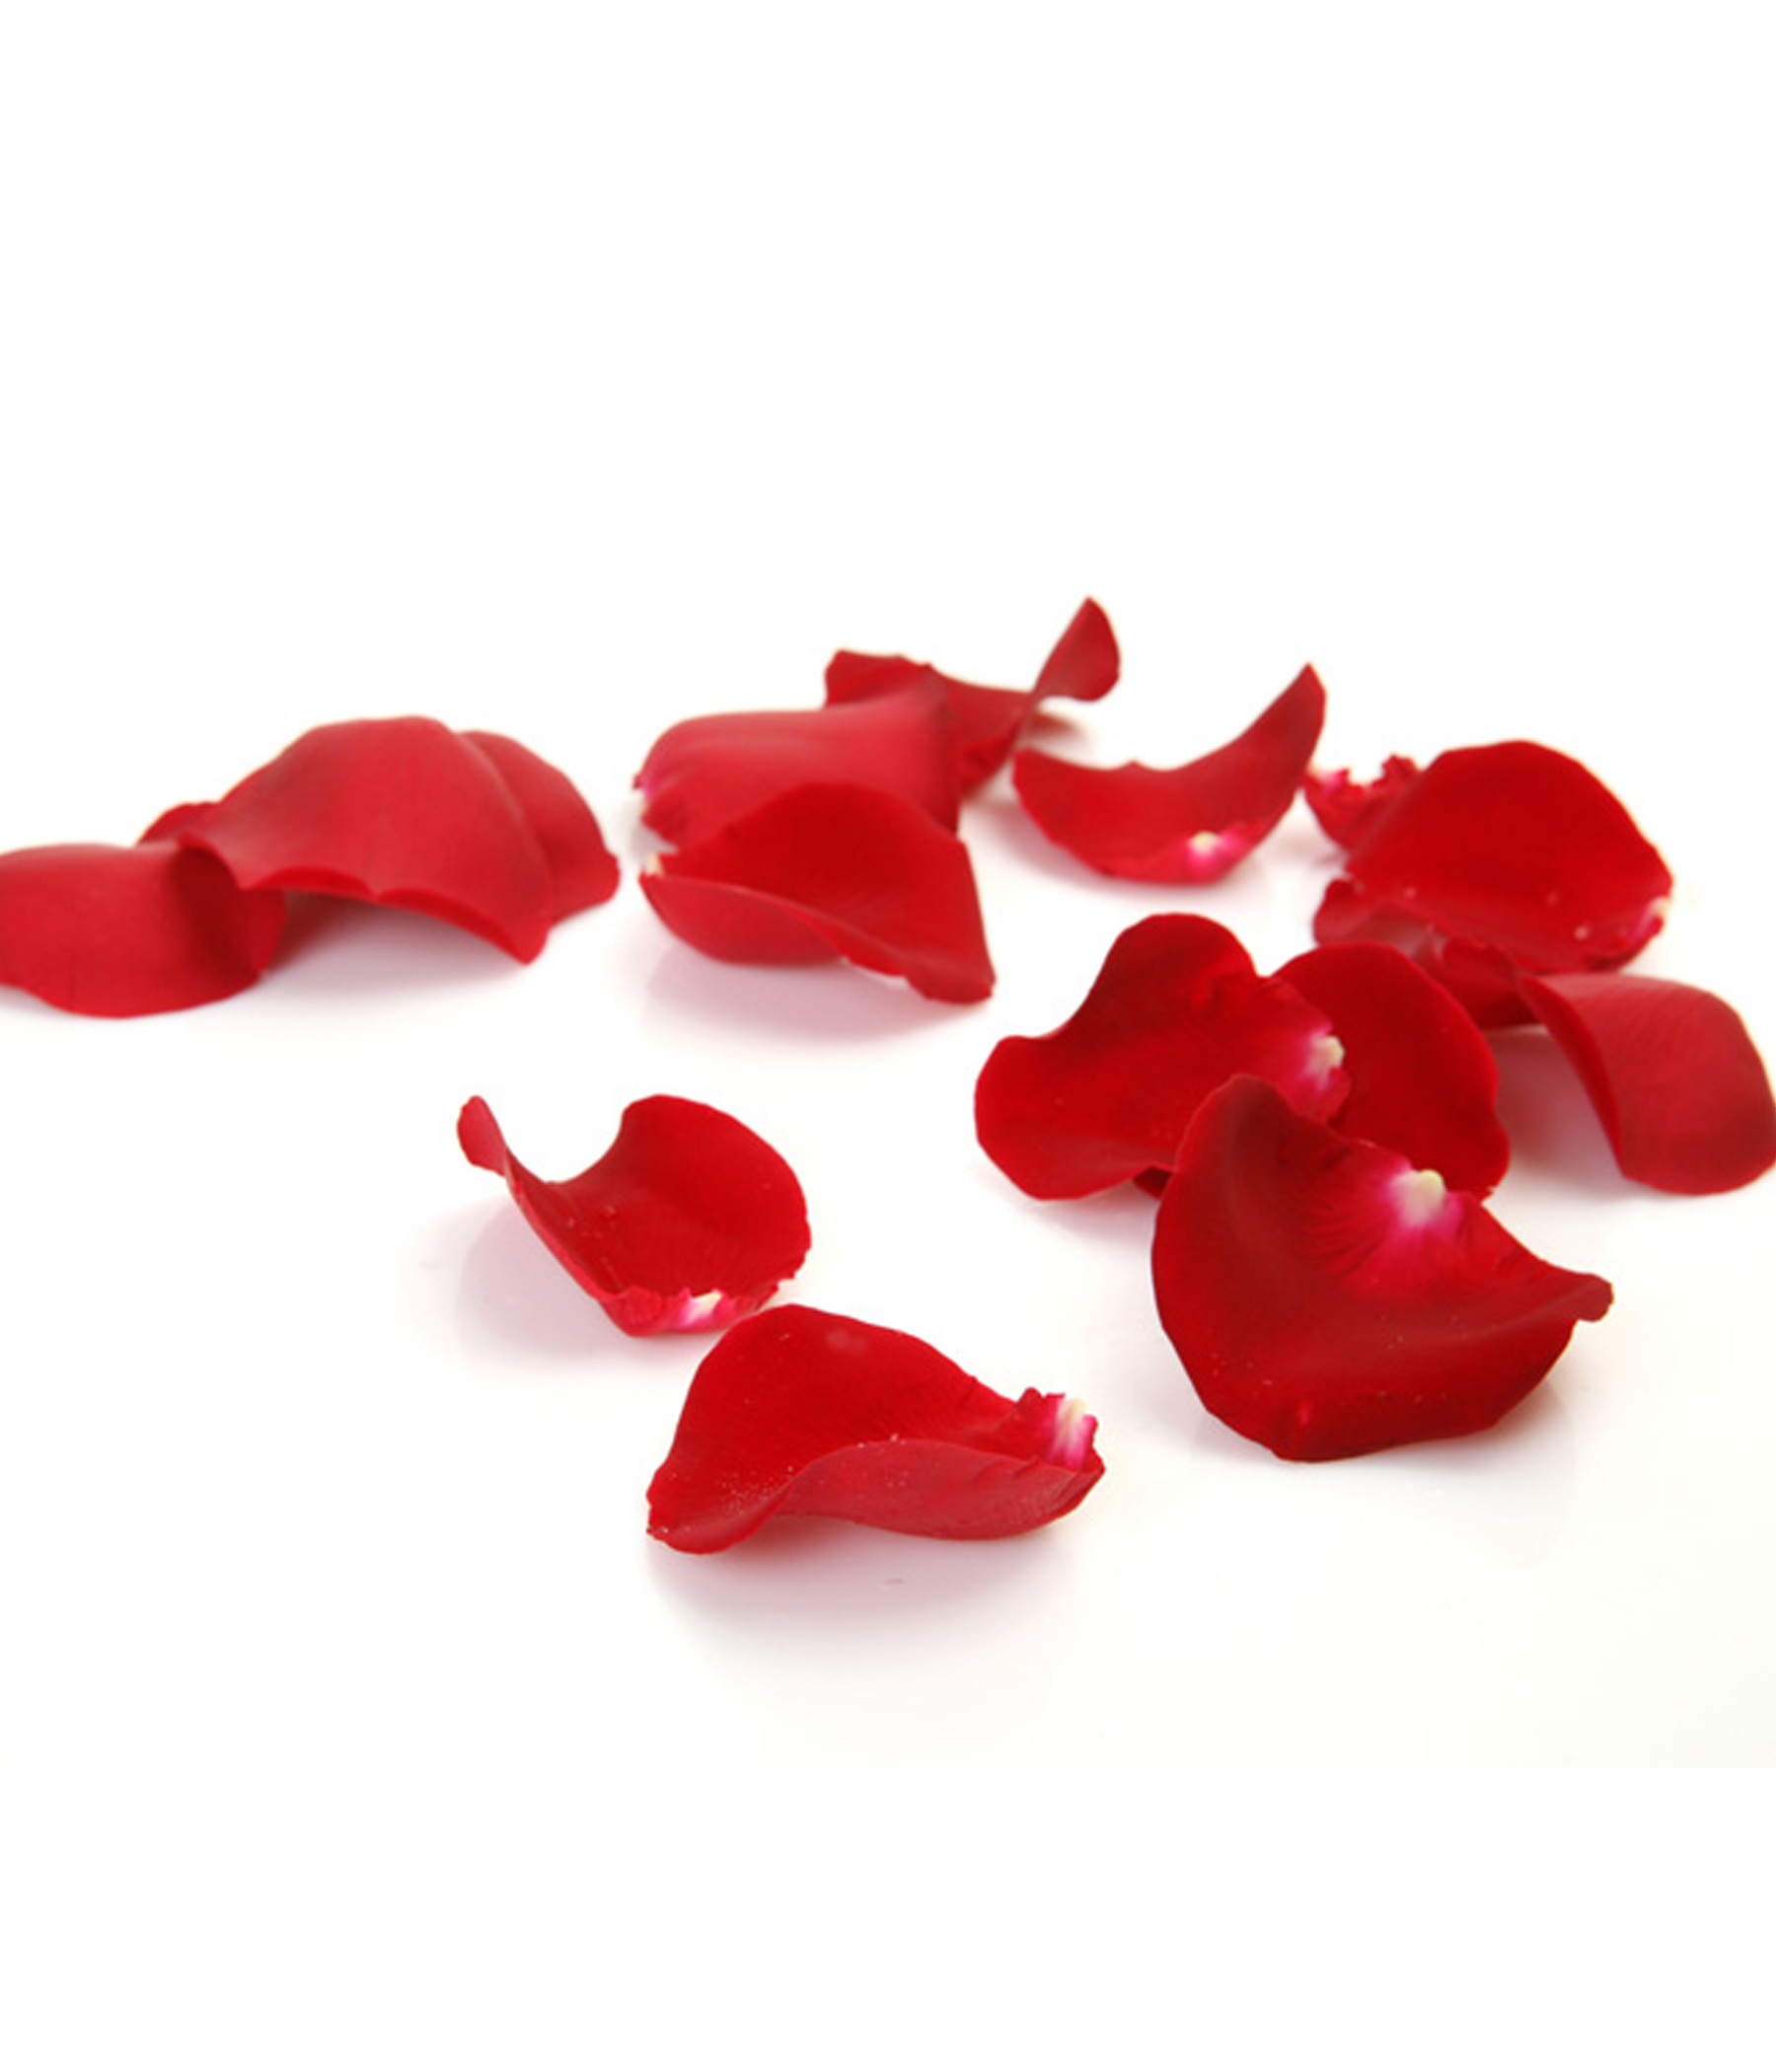 Gulabi Rekulu/Rose Petals/Dried Red Rose Petals/Pink Rose Petals 100G